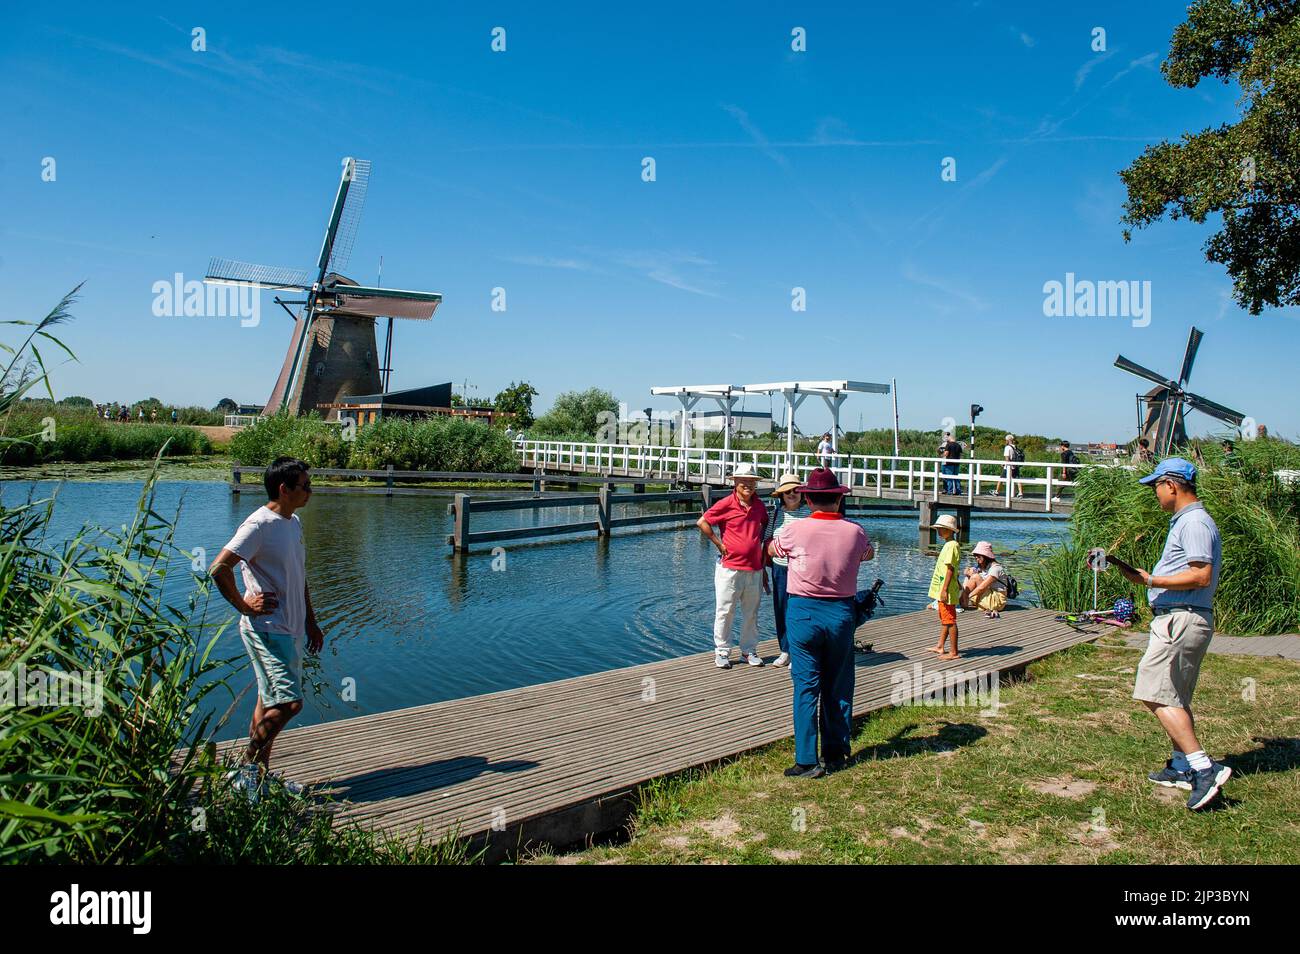 Kinderdijk, pays-Bas. 13th août 2022. Les visiteurs du monde entier prennent des photos avec les moulins à vent derrière eux. Dans la belle région riche en eau près de Dordrecht, vous trouverez les moulins à vent de Kinderdijk. Construits vers 1740, ces 19 magnifiques moulins à vent font partie d'un plus grand système de gestion de l'eau pour éviter les inondations. Aujourd'hui, ils symbolisent la gestion de l'eau aux pays-Bas et, en 1997, ils ont été déclarés site du patrimoine mondial de l'UNESCO. Chaque année, des milliers de touristes du monde entier visitent ce lieu emblématique. Crédit : SOPA Images Limited/Alamy Live News Banque D'Images